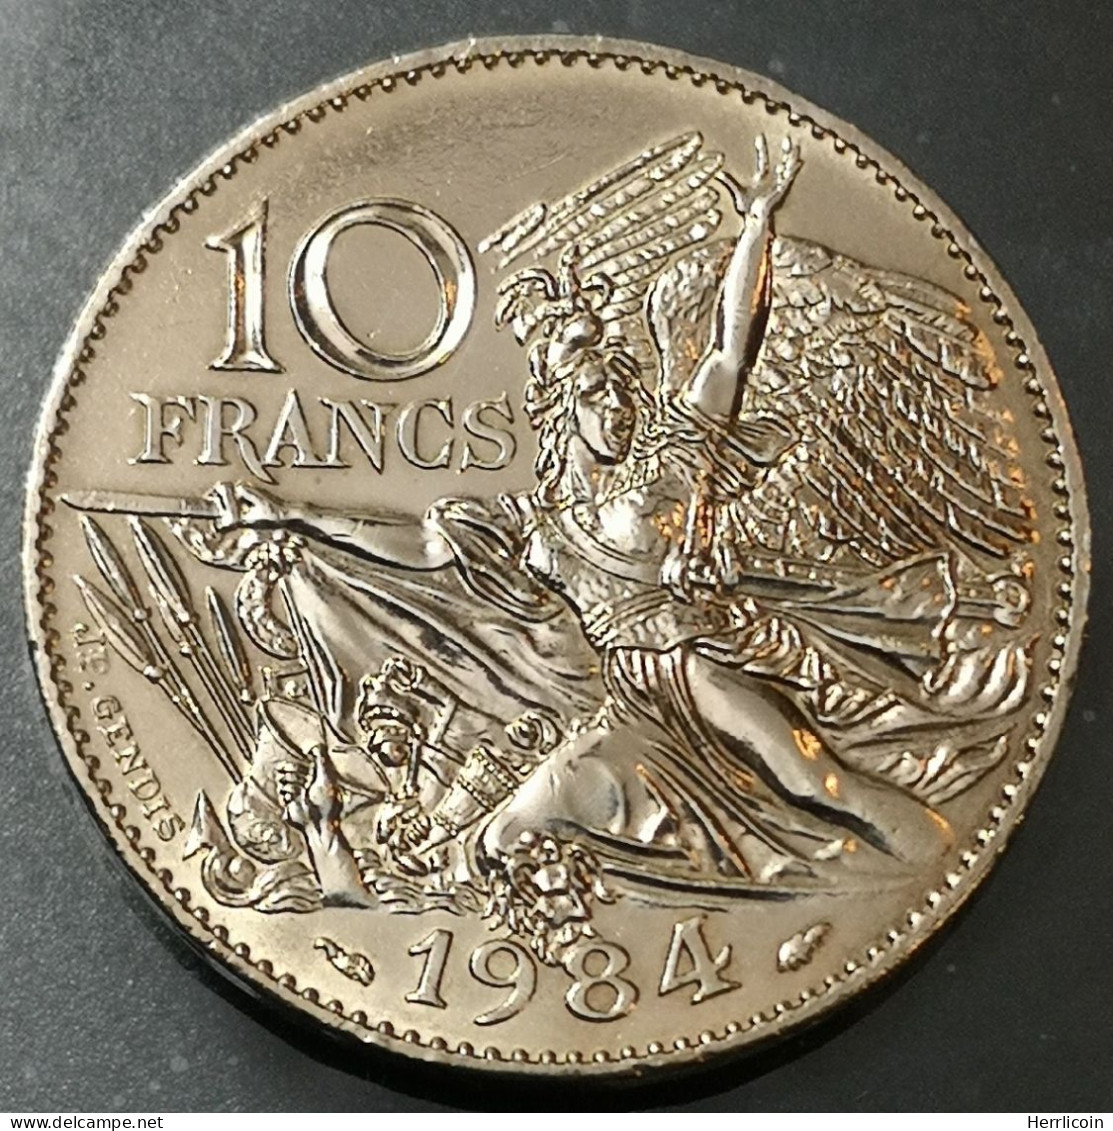 Monnaie France - 1984 - 10 Francs François Rude - Tranche A - Gedenkmünzen